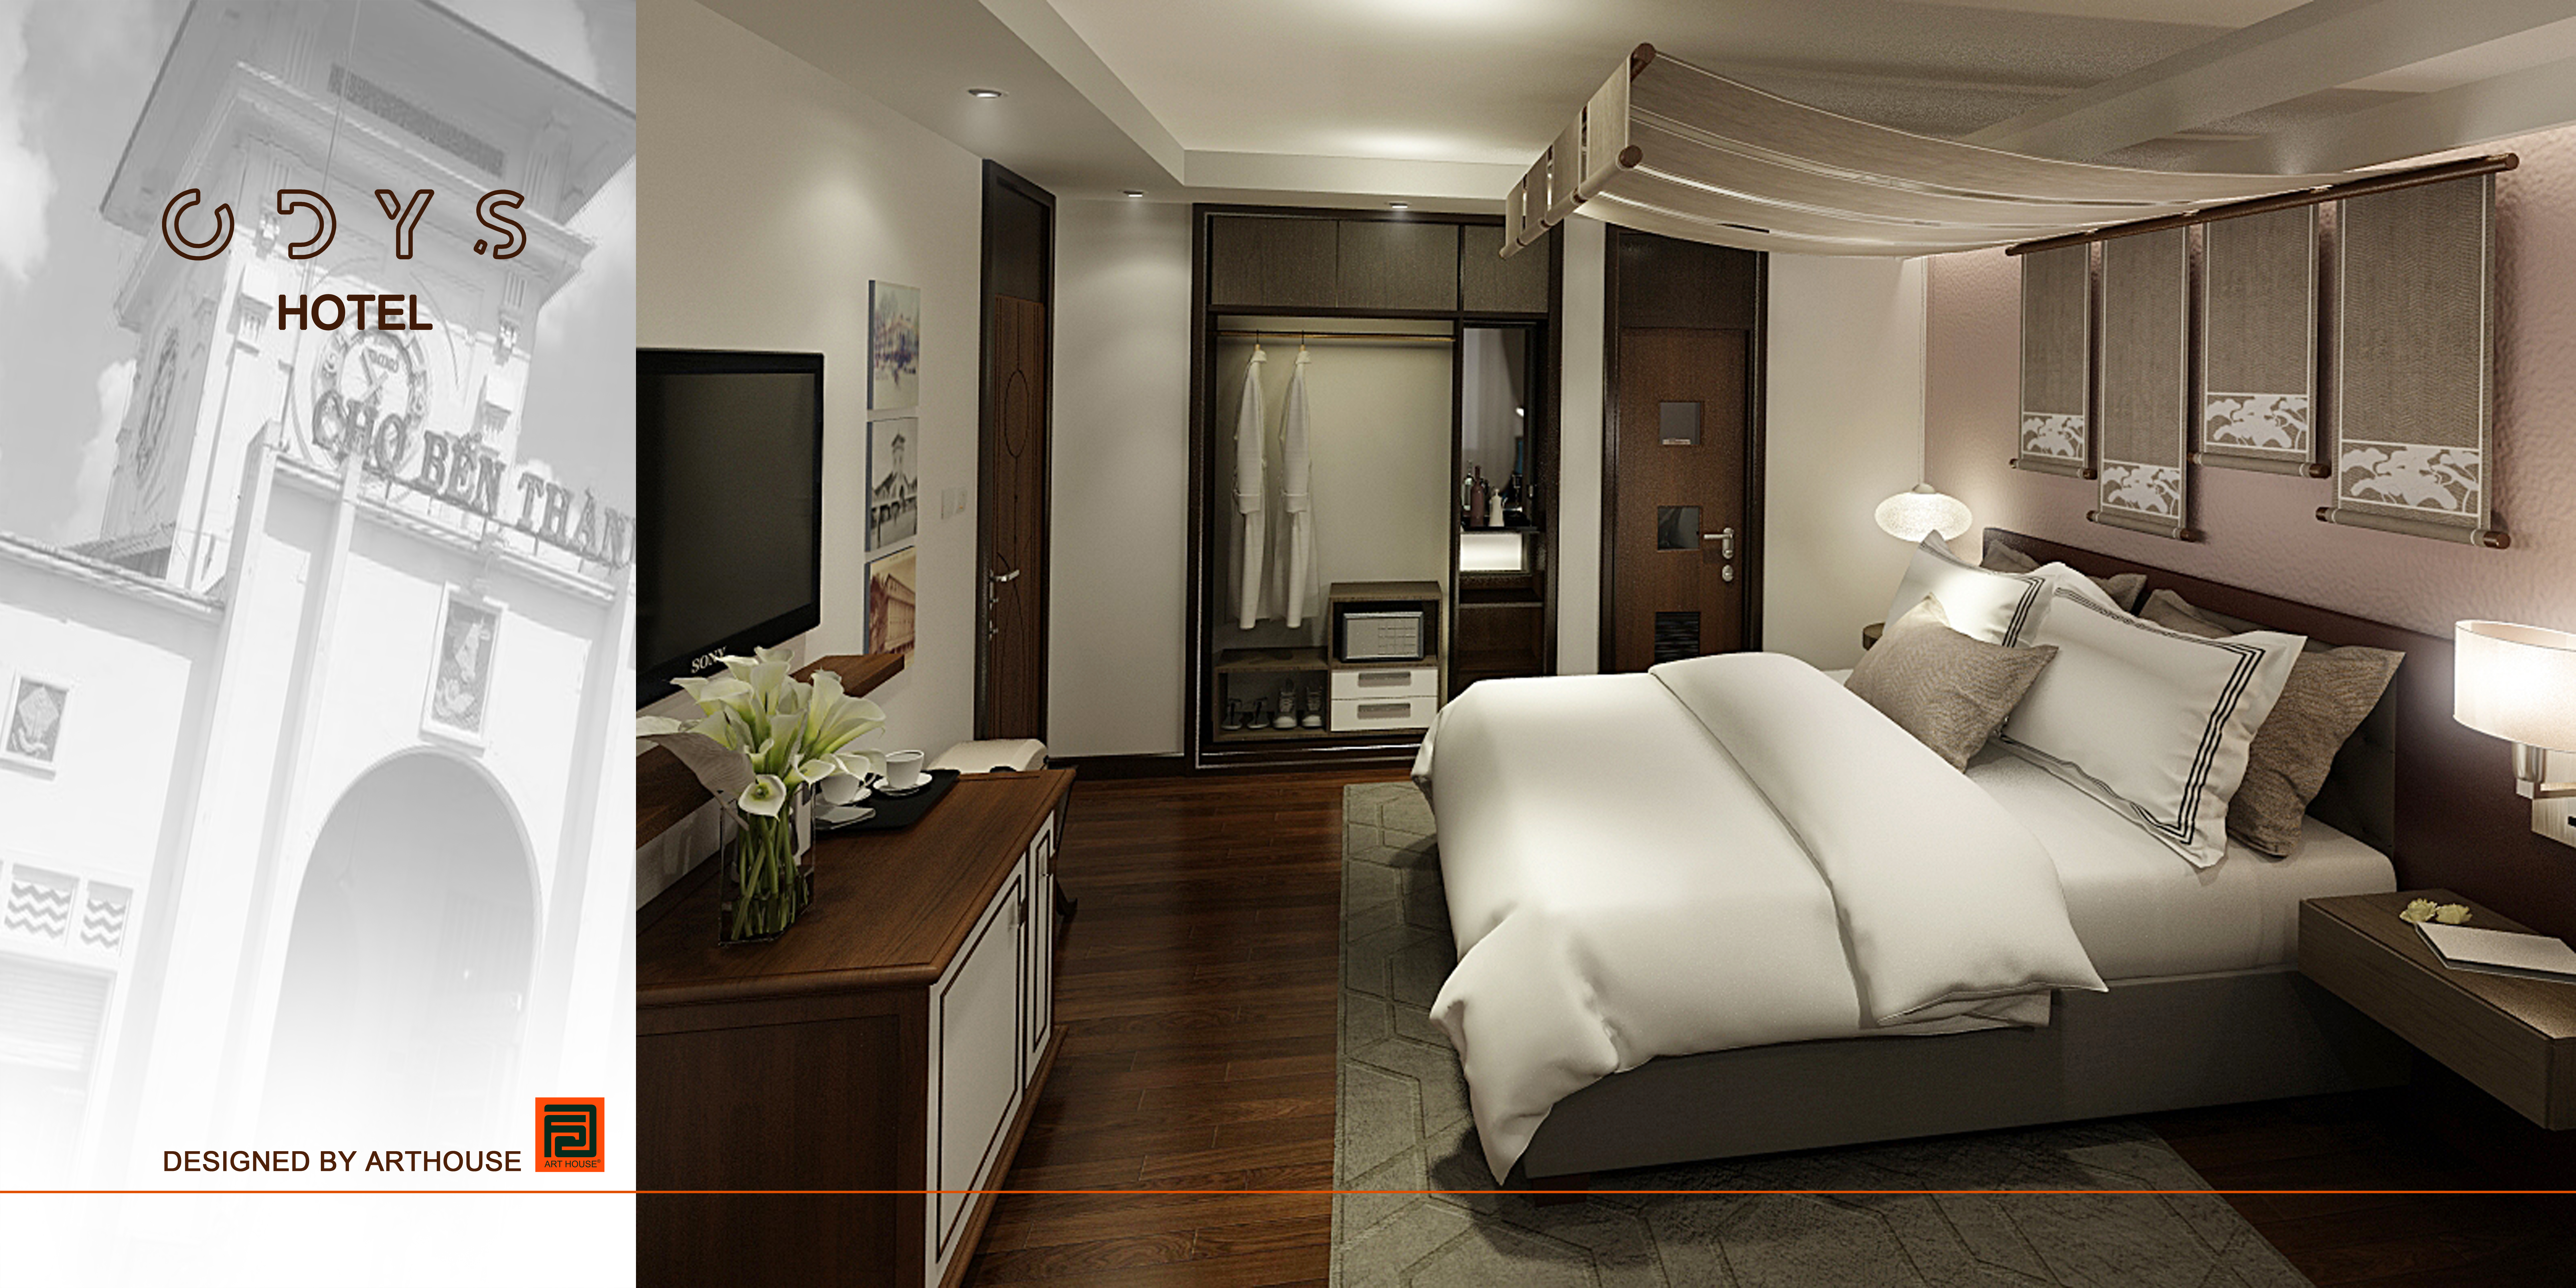 Thiết kế nội thất Khách Sạn tại Hồ Chí Minh Odys Hotel 1599626319 0